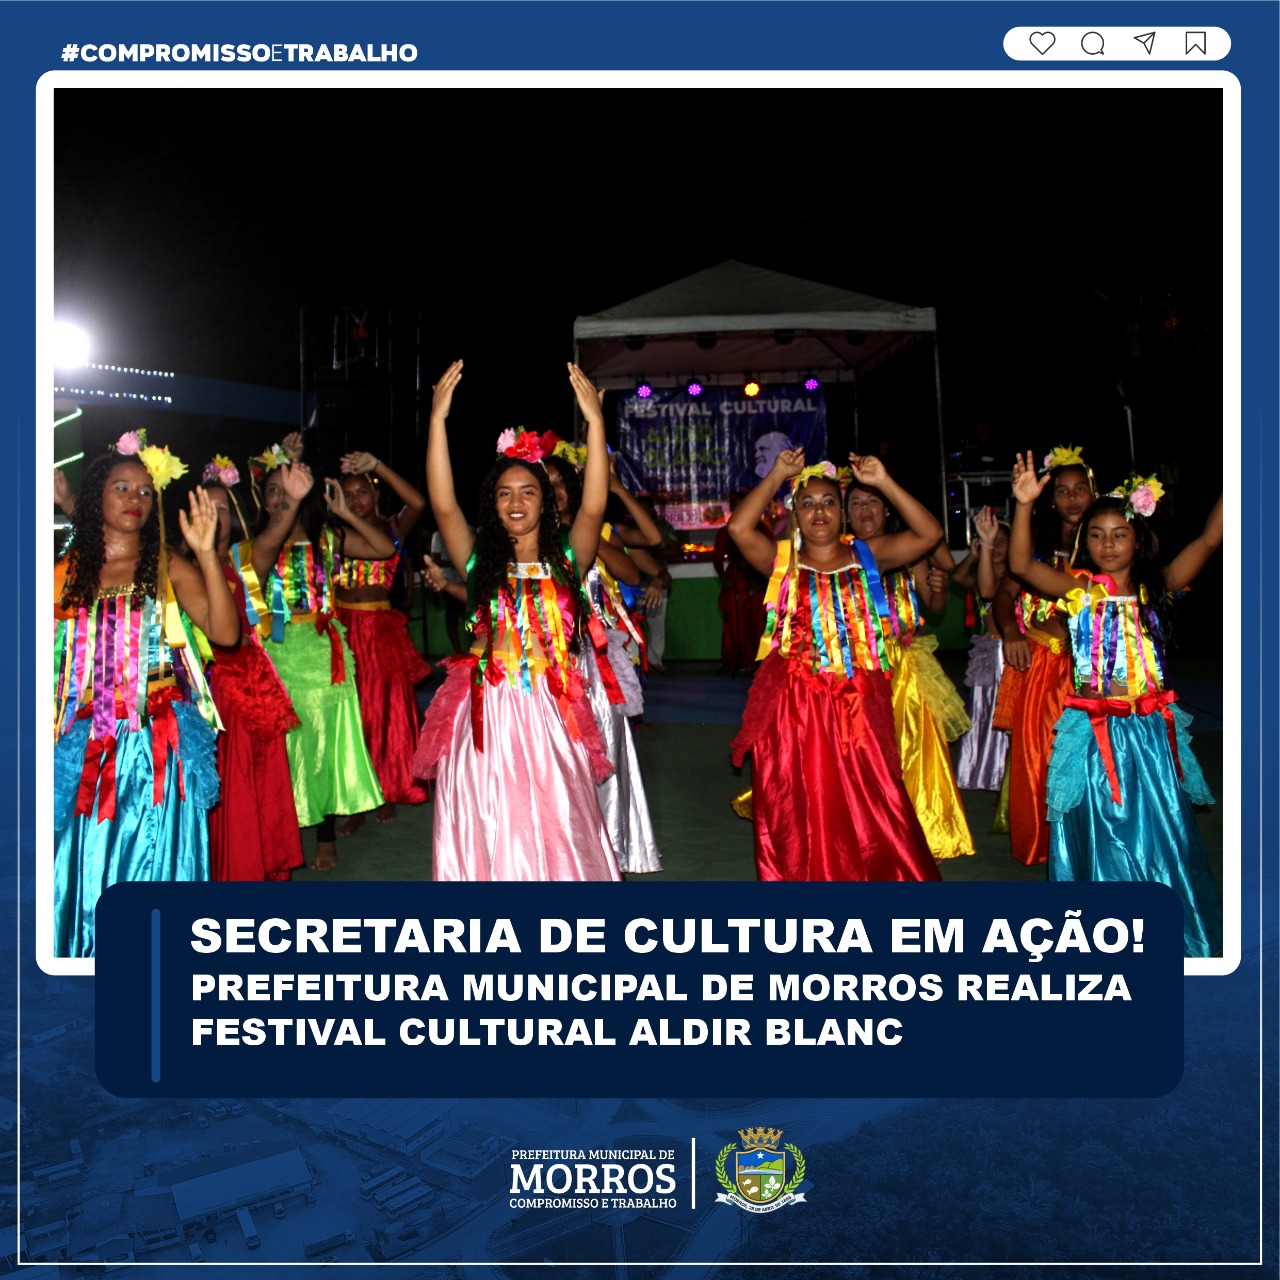 Secretaria de Cultura em Ação! Prefeitura Municipal de Morros Realizada Festival Cultural Aldir Blanc.